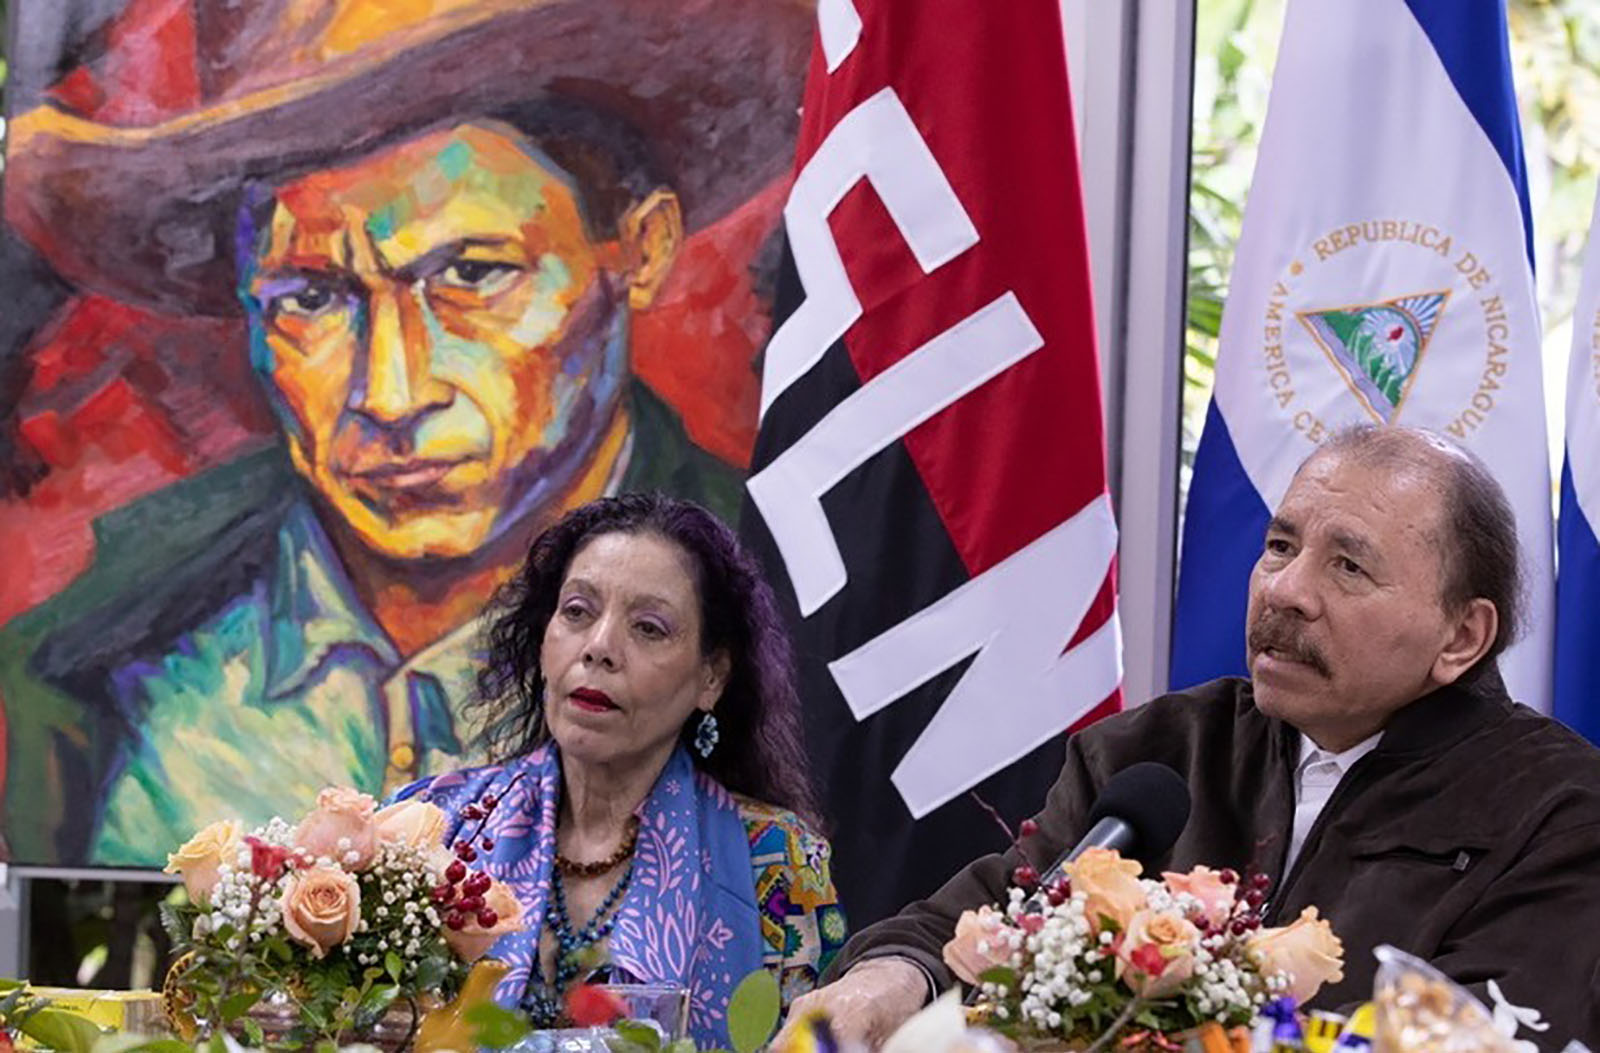 Daniel Ortega y Rosario Murillo, acusados por crímenes de lesa humanidad ante justicia argentina.